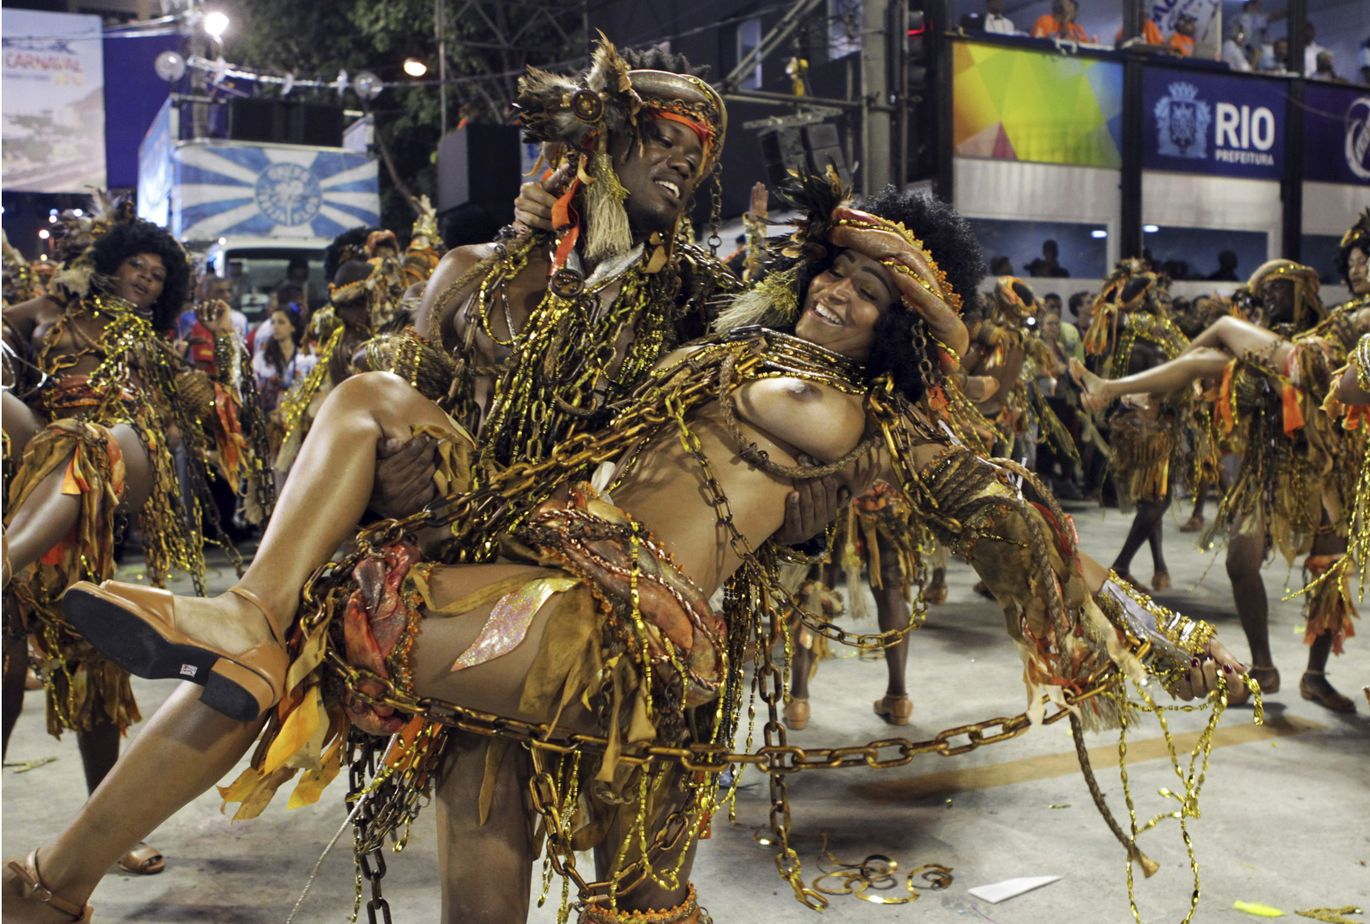 оргия на карнавале в бразилии порно фото 36